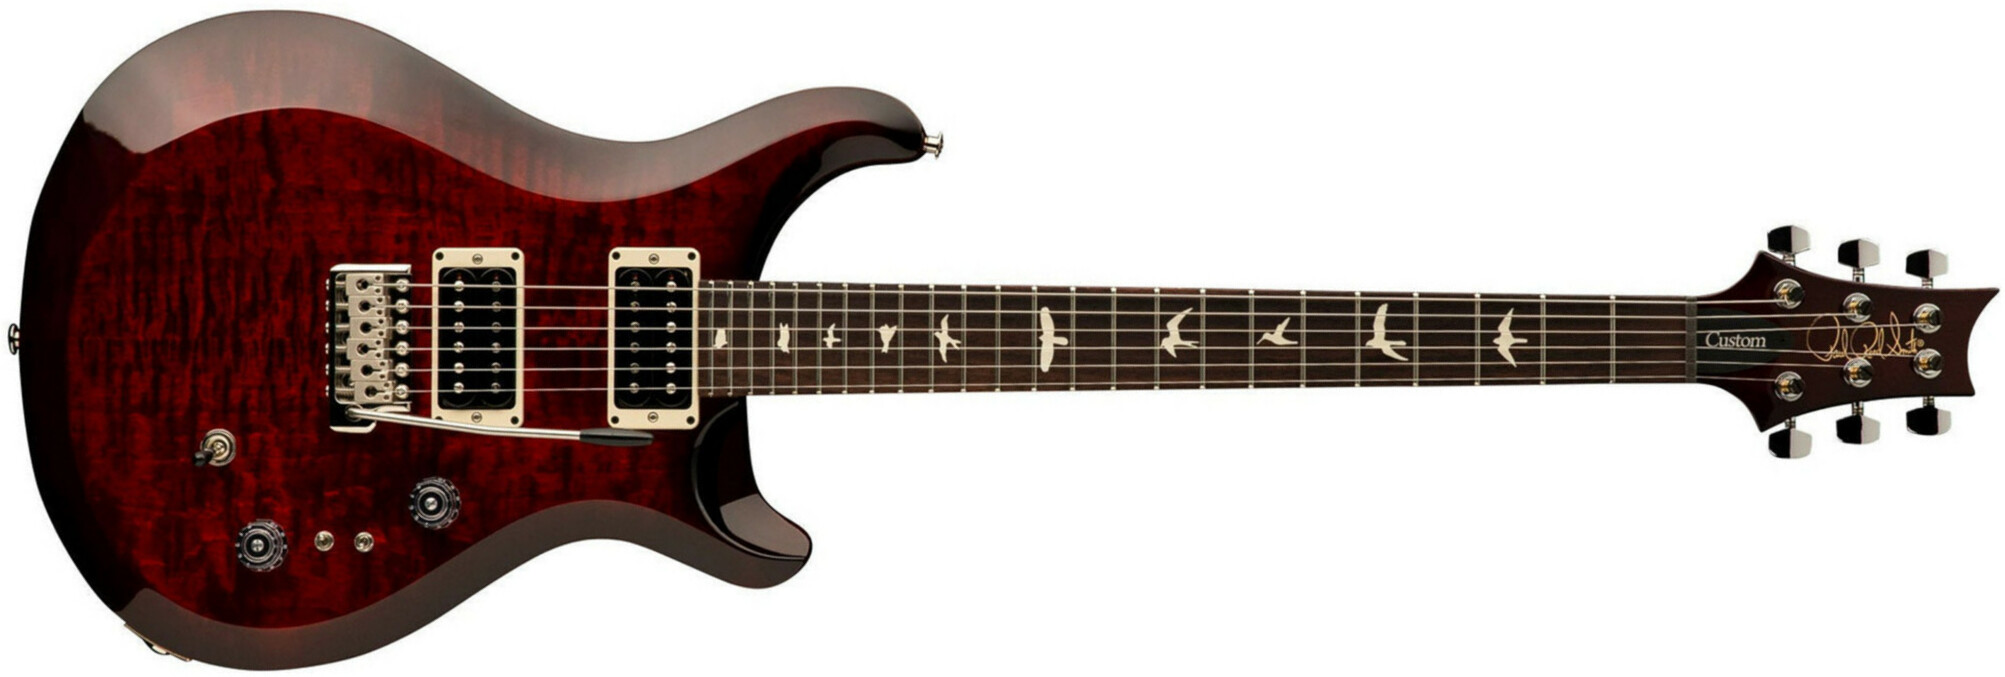 Prs S2 Custom 24-08 2h Trem Rw - Fire Red Burst - Guitarra eléctrica de doble corte - Main picture